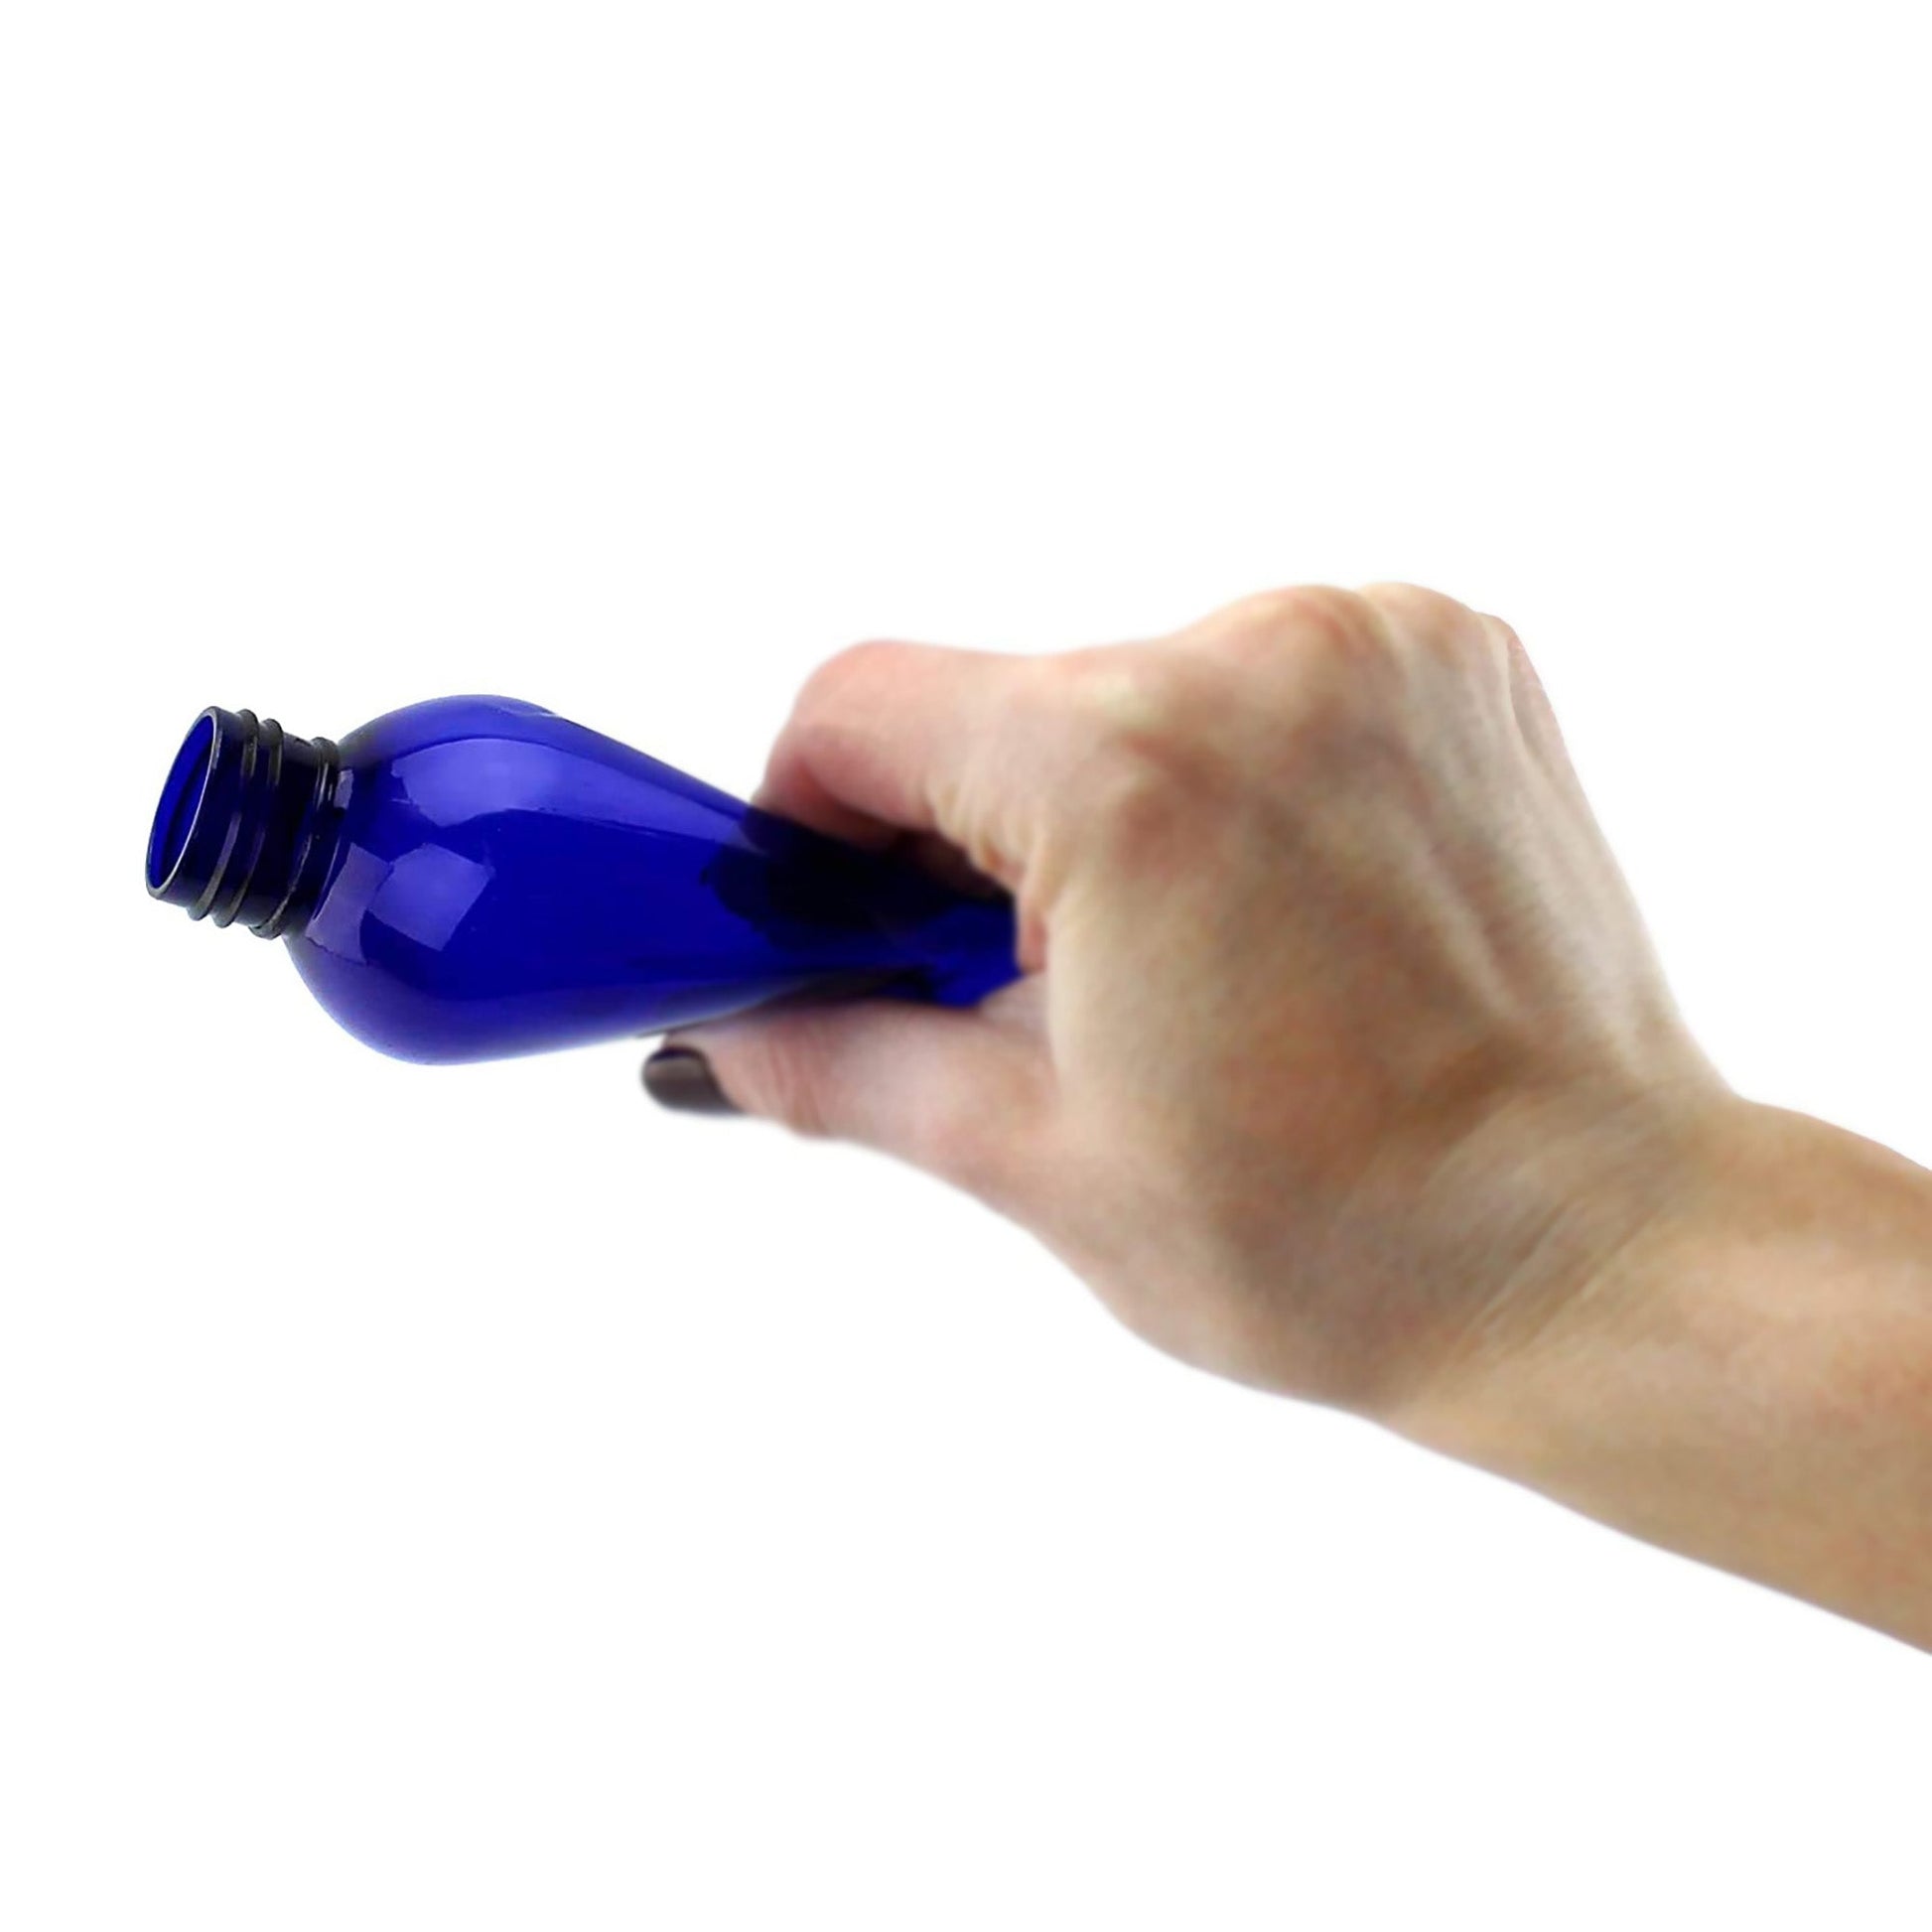 8oz Empty Plastic Squeeze Bottles w/Disc Top Flip Cap (6 pack, Blue) - sh1260cb08ozBL